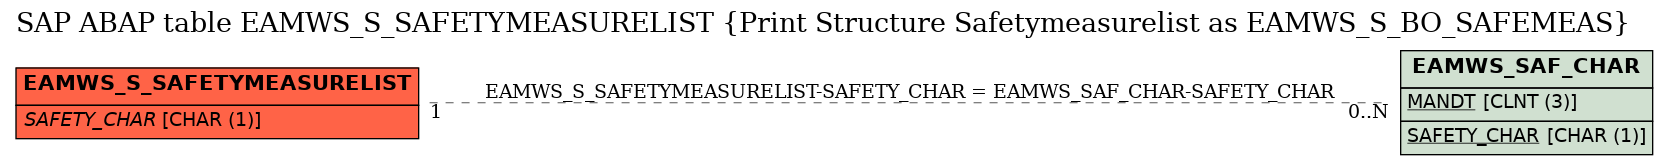 E-R Diagram for table EAMWS_S_SAFETYMEASURELIST (Print Structure Safetymeasurelist as EAMWS_S_BO_SAFEMEAS)